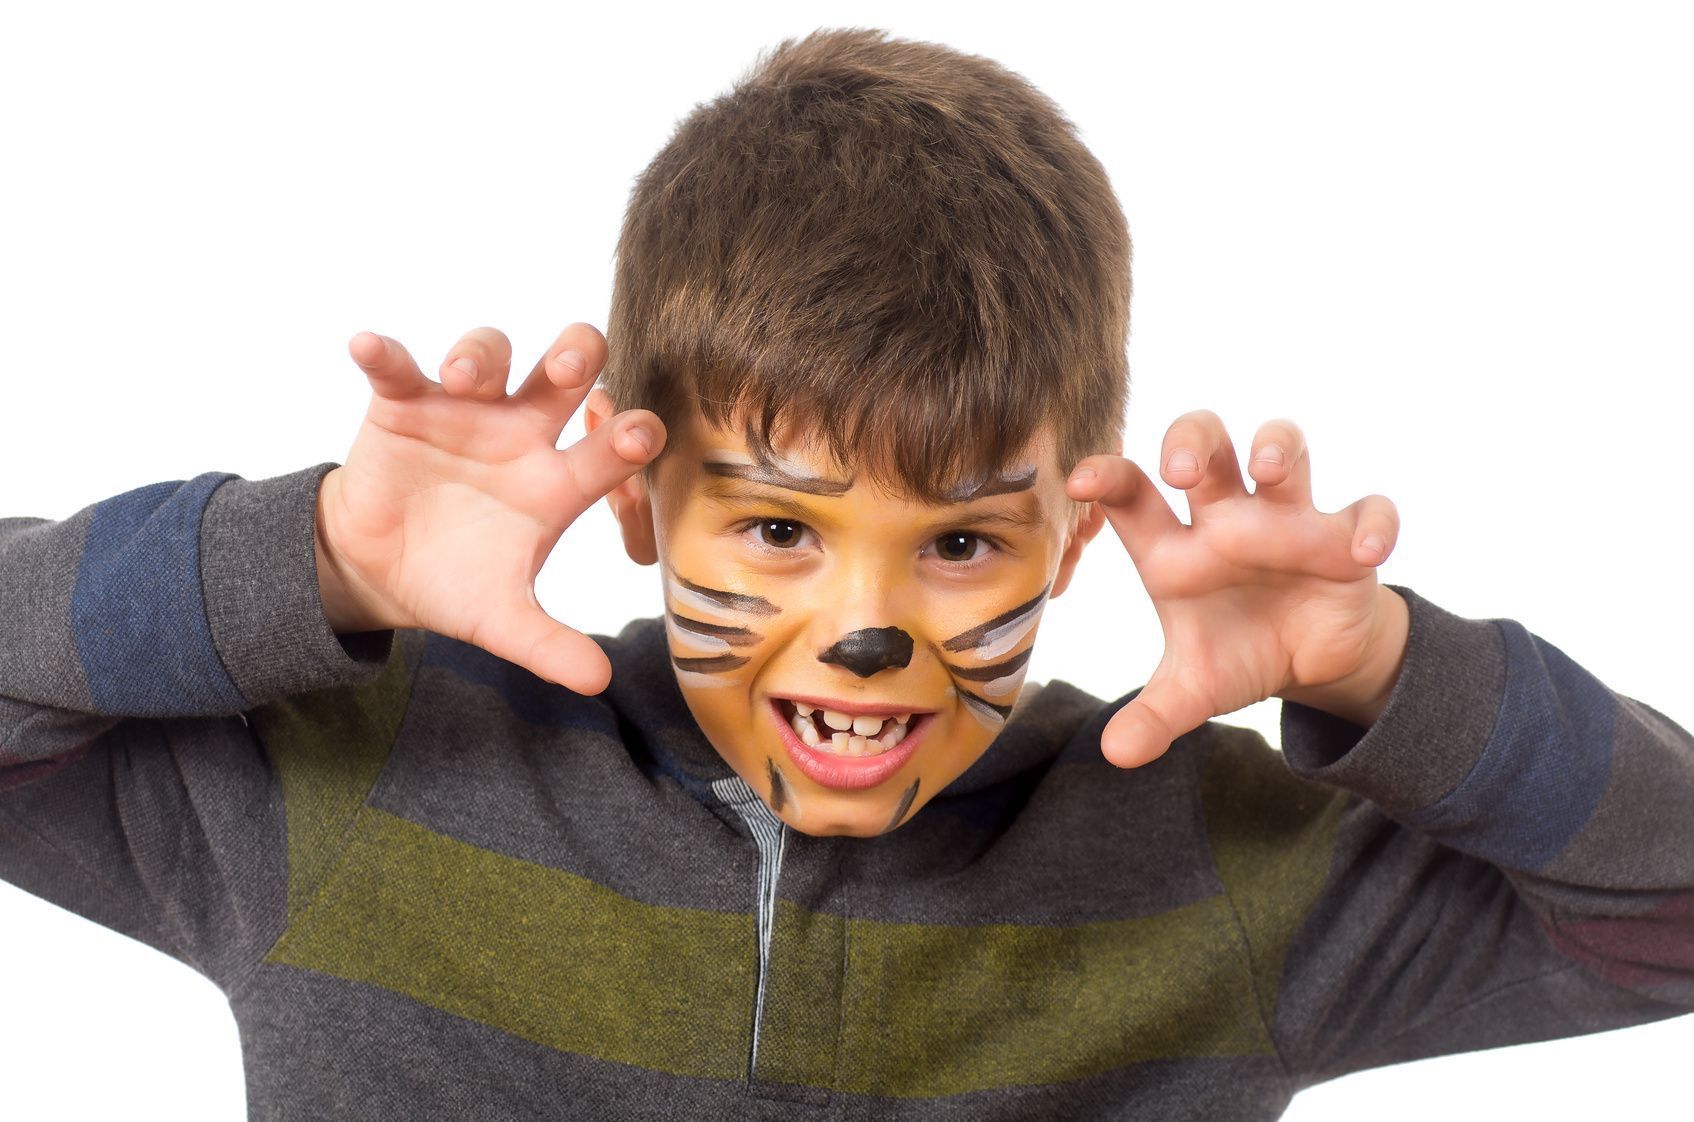 Damit Ihr Sprössling auch fauchen kann wie ein Tiger, schminken Sie ihm noch eine authentische Tigerschnauze.